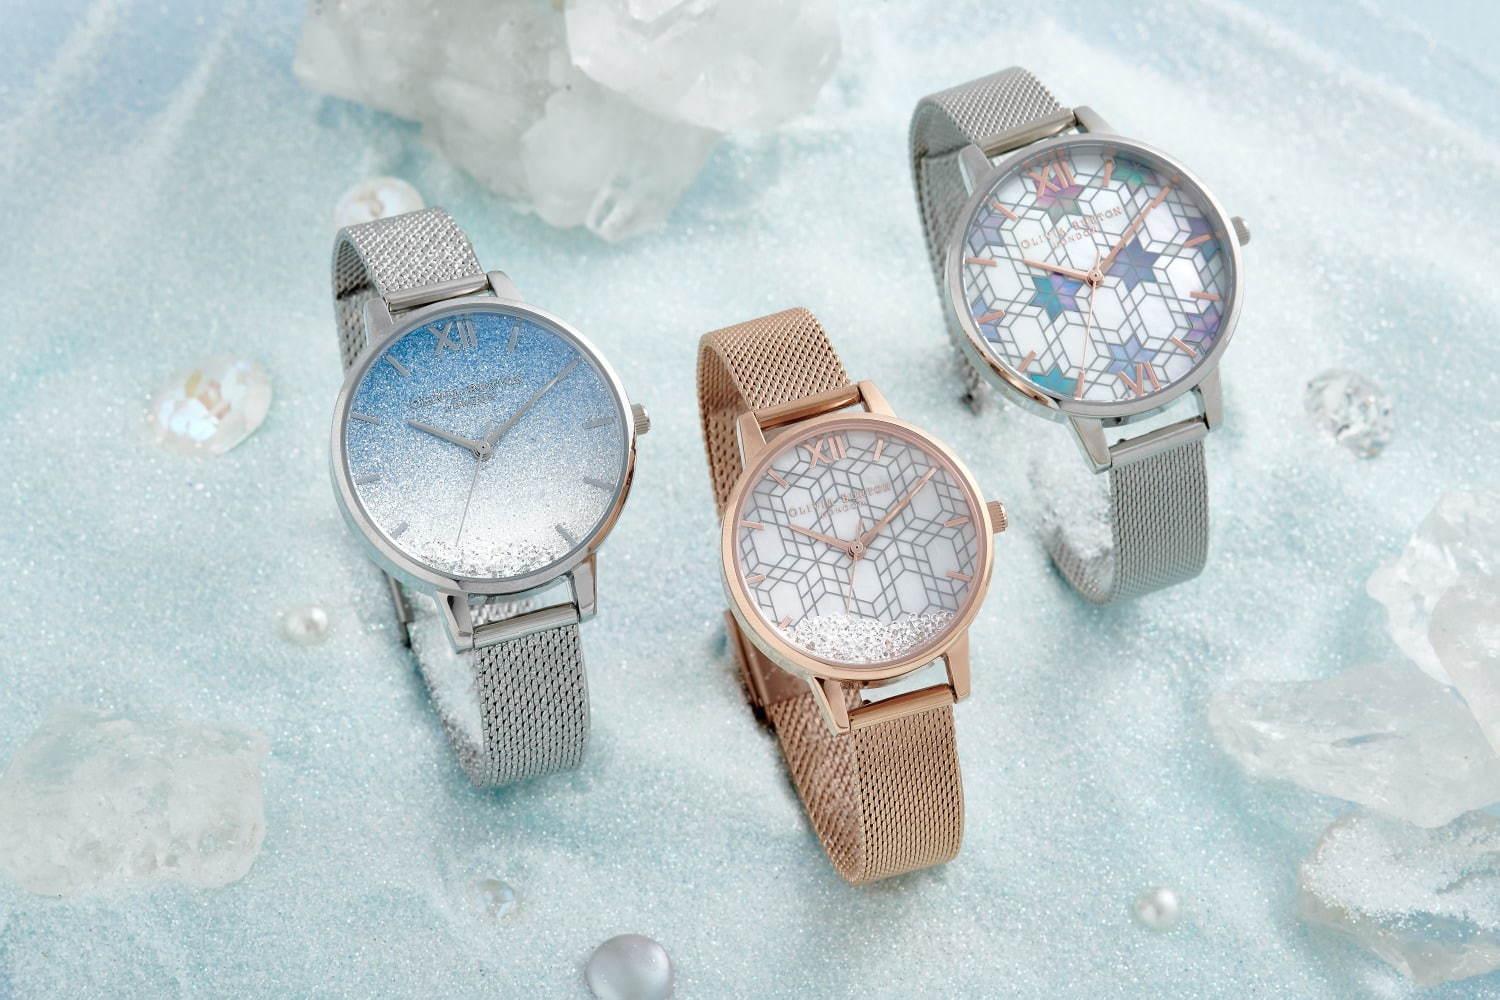 オリビア・バートンの新作腕時計「アイス クイーン」凍てつく湖のきらめきや雪の結晶に着想 コピー